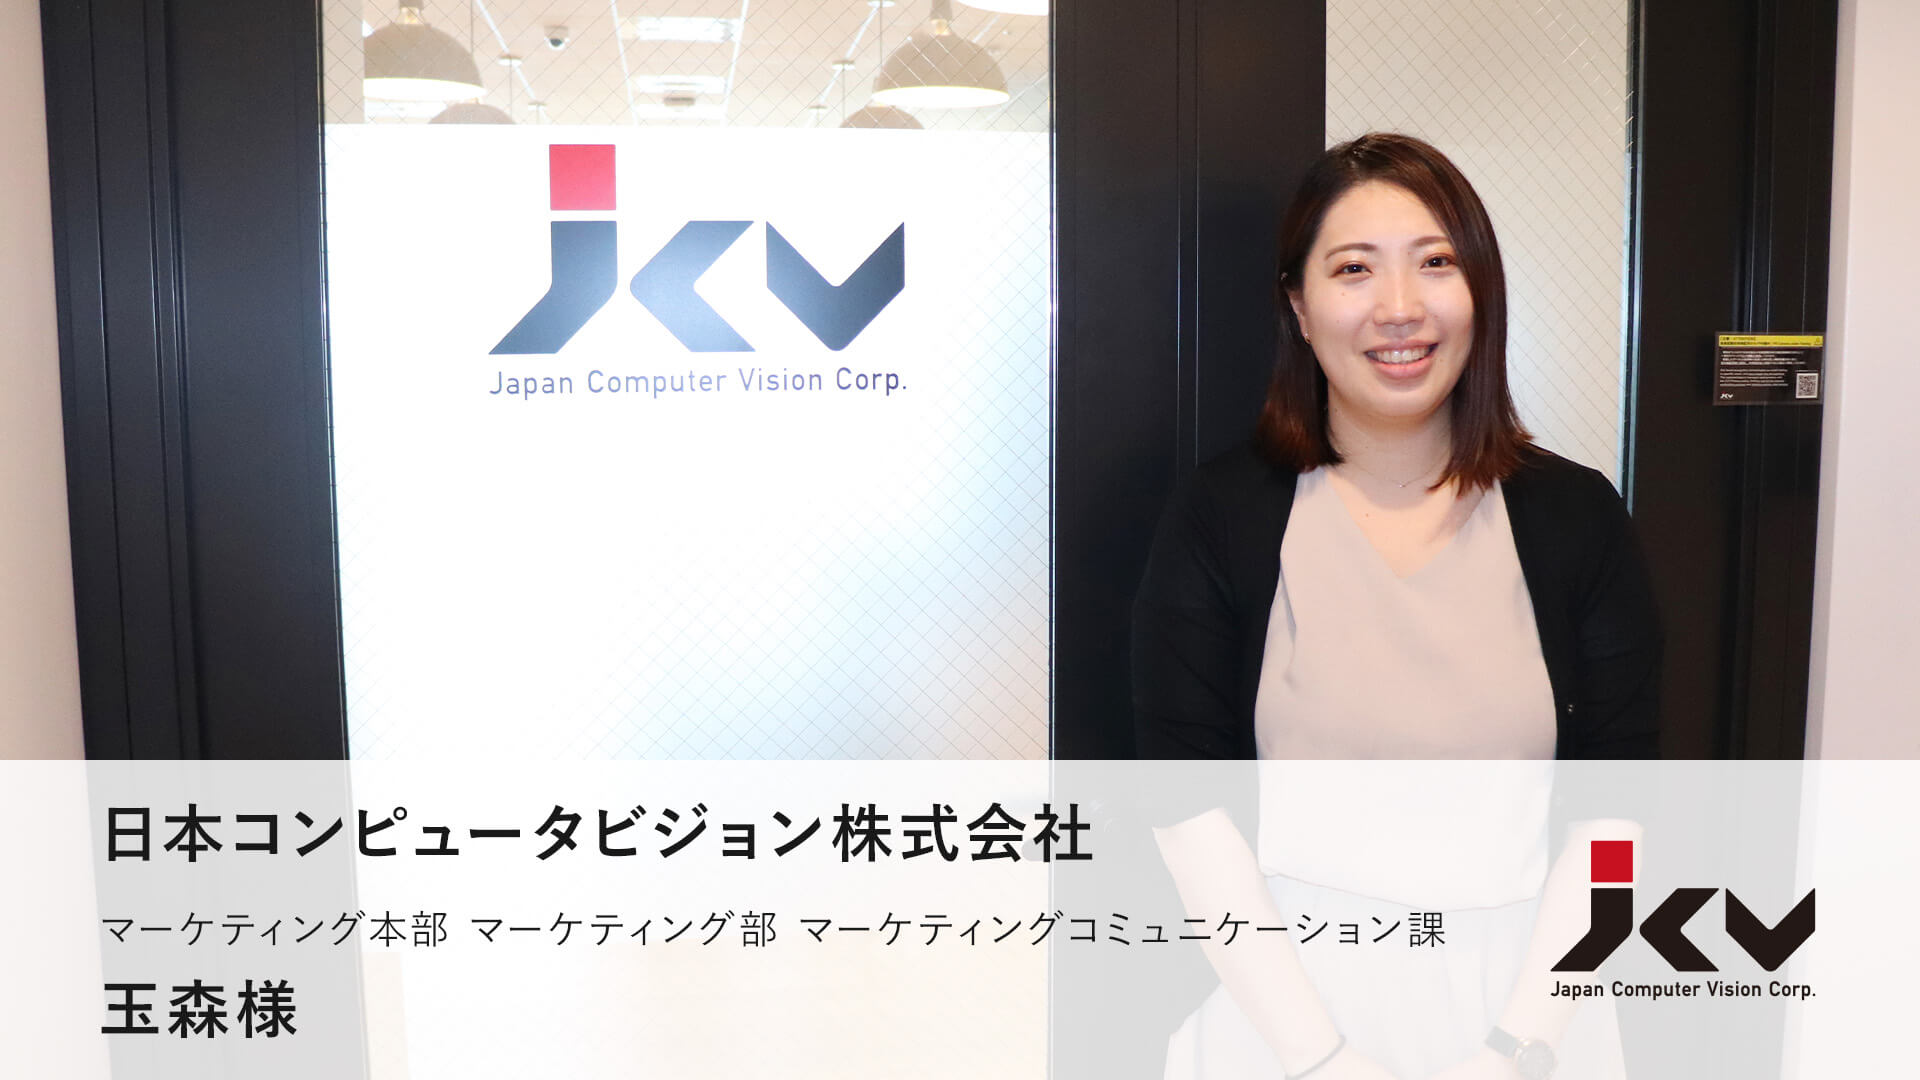 日本コンピュータビジョン株式会社 記事コンテンツとホワイトペーパーの導線設計を行い、CV数増加を実現